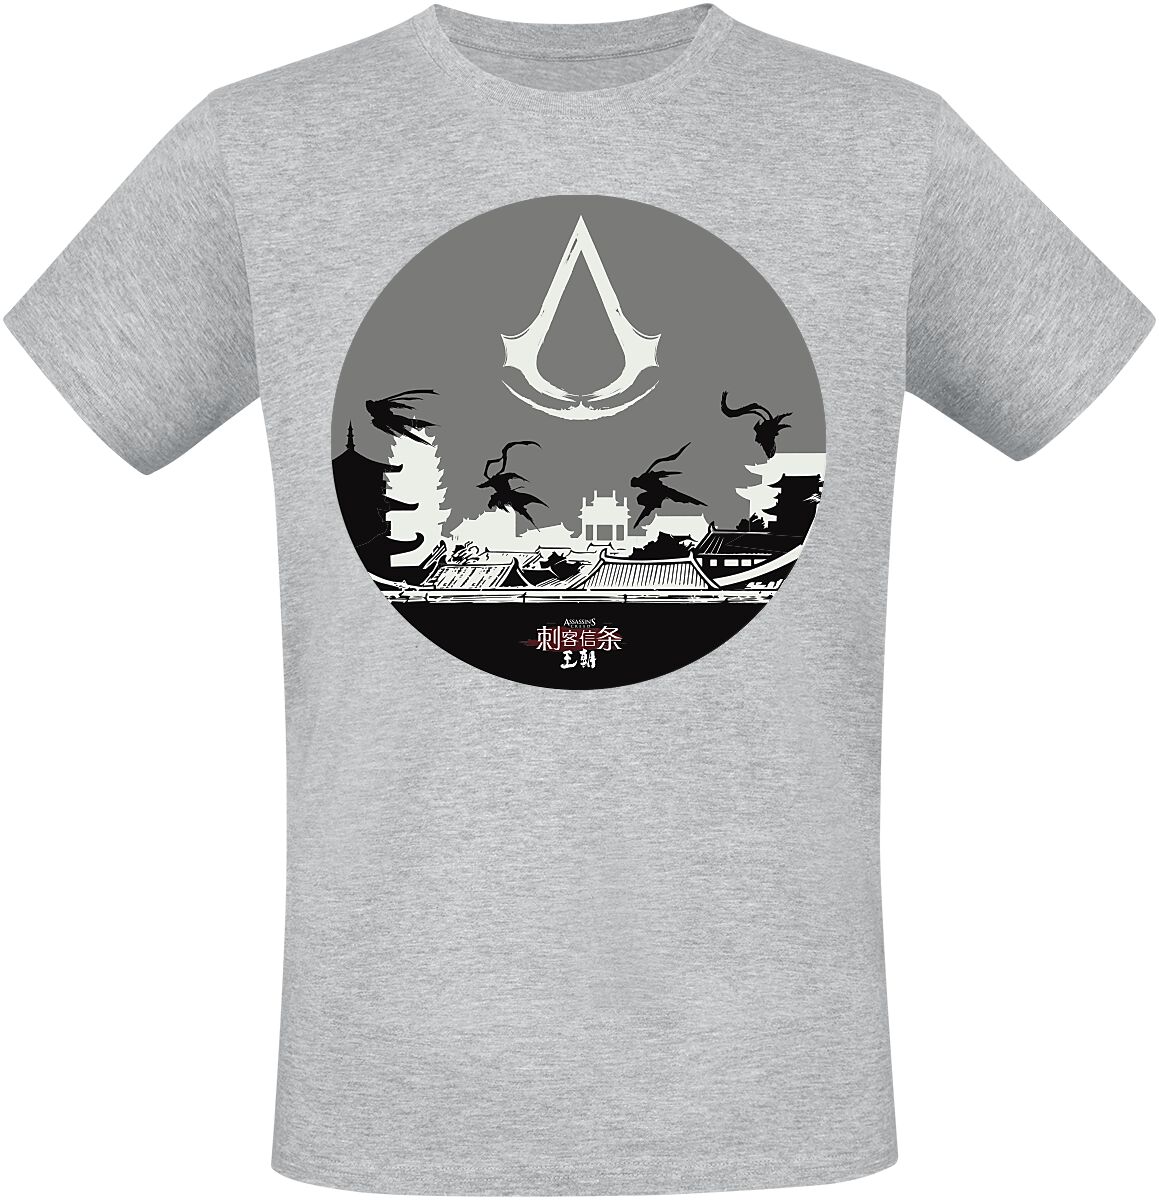 Assassin`s Creed - Gaming T-Shirt - Dynasty - Circle - S bis L - für Männer - Größe L - grau meliert  - EMP exklusives Merchandise!